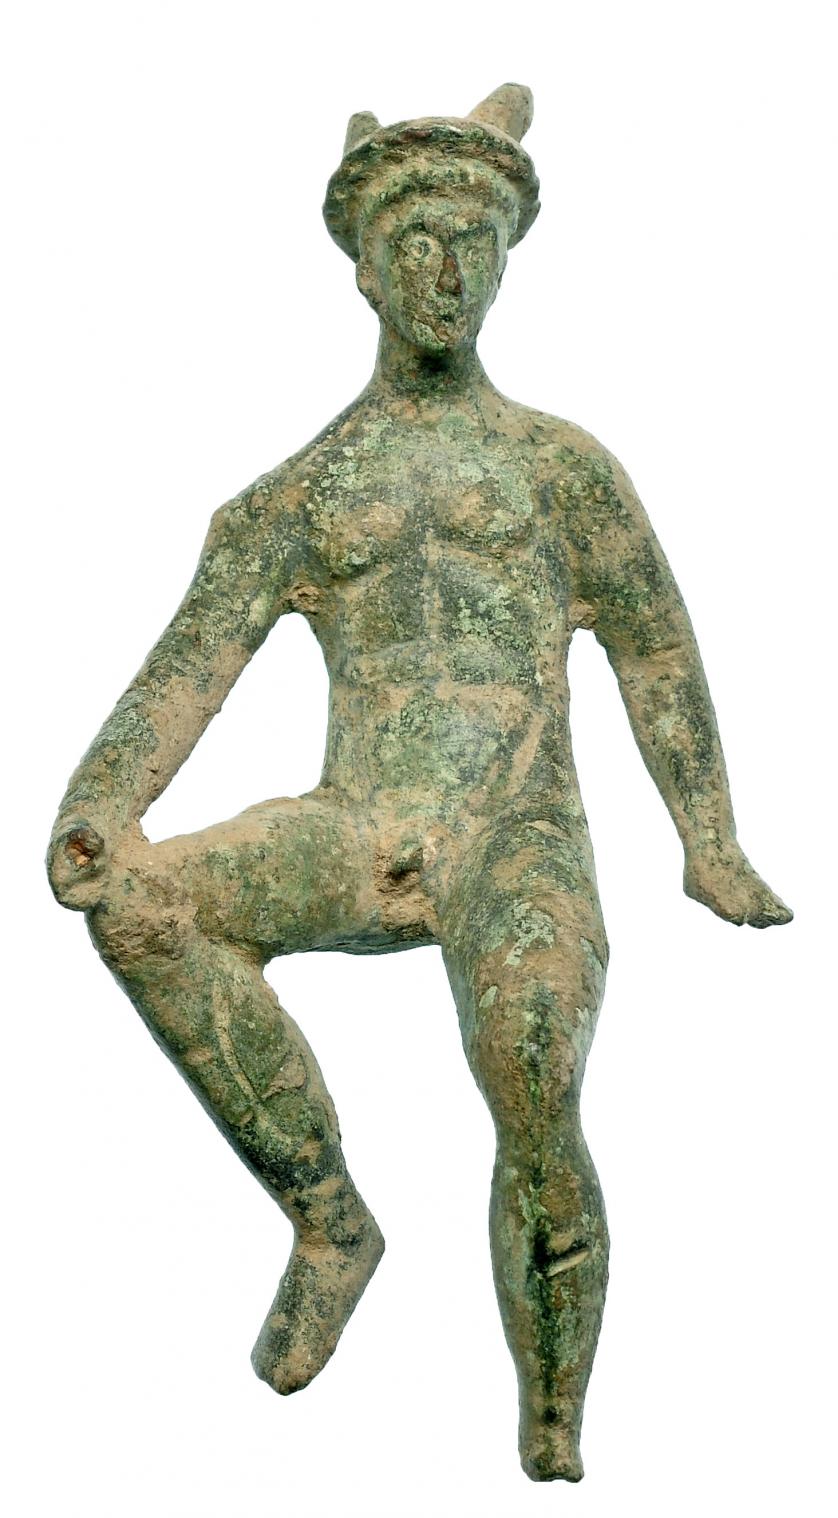 720   -  ROMA. Imperio Romano. Bronce. Figura de Mercurio sedente. Altura: 11,2 cm. Procedente de colección privada española años 1970-80.